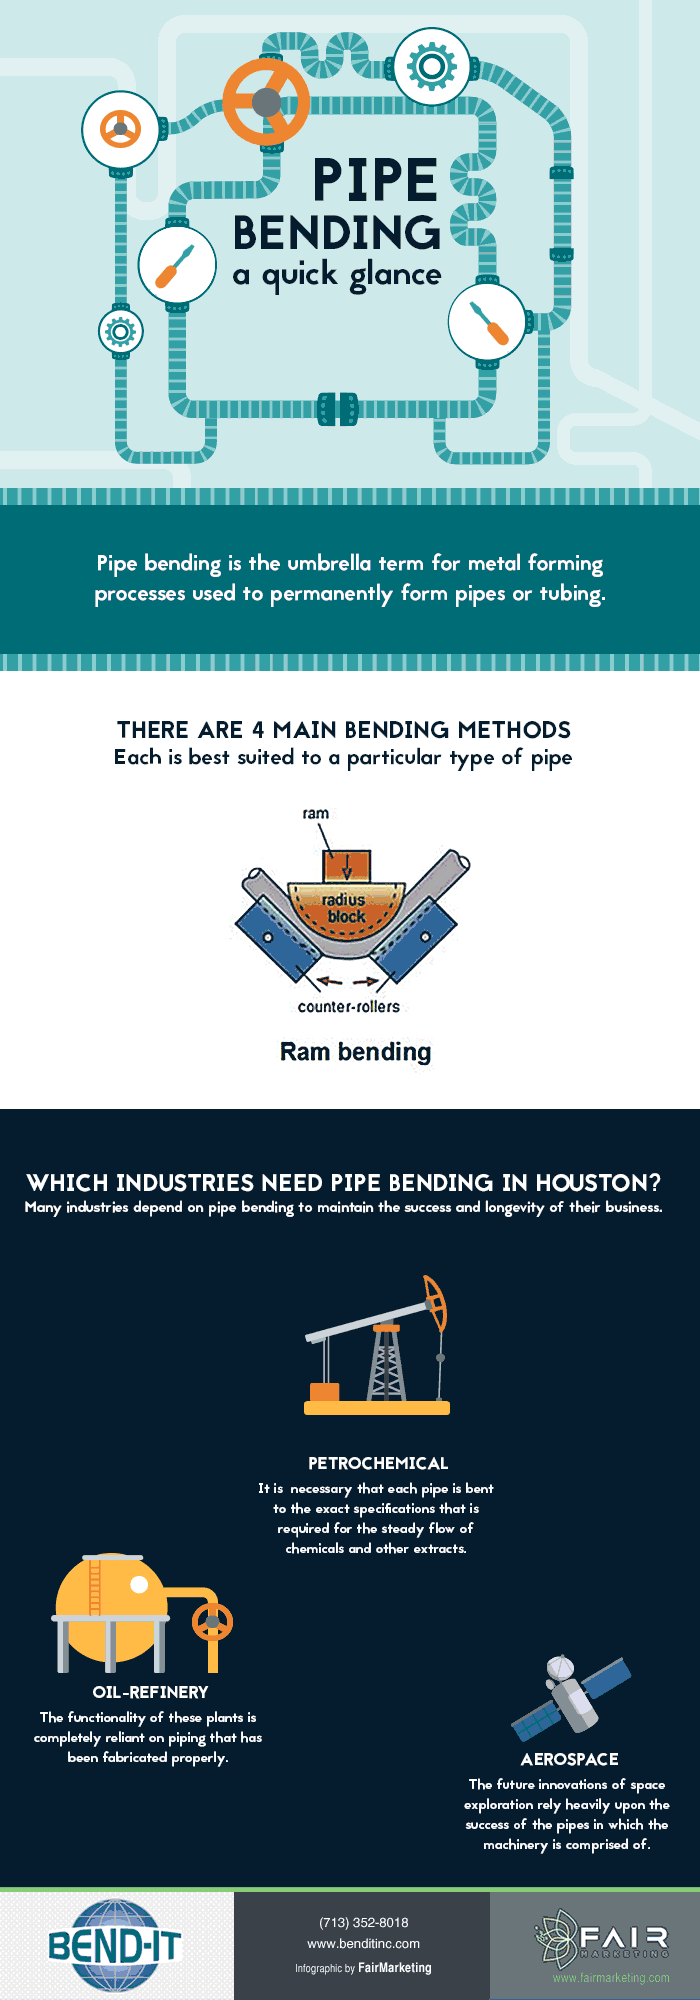 pipe-bending-houston